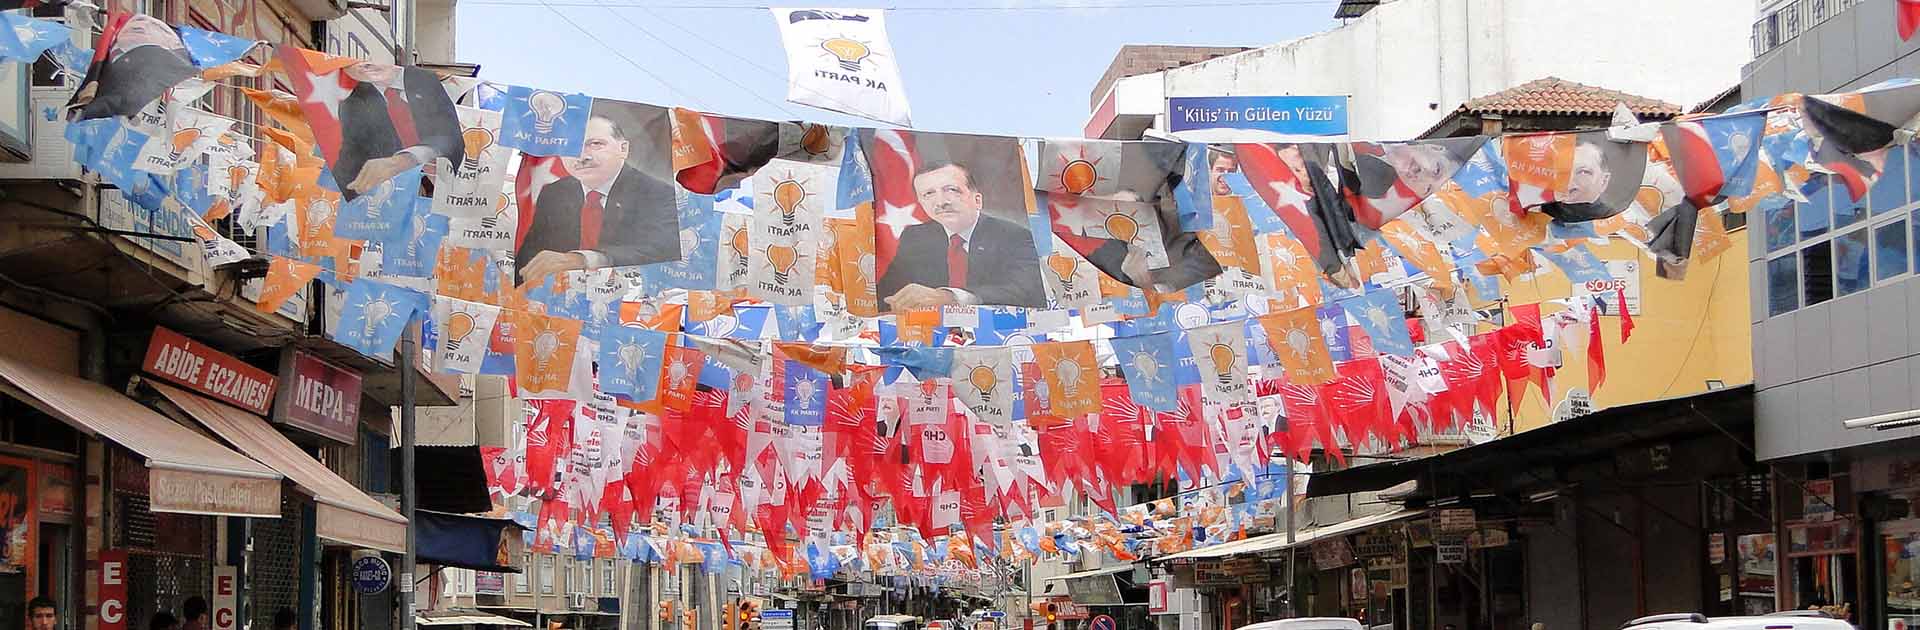 Pancartas y parafernalia de la campaña electoral nacional de 2011 en una calle de la ciudad de Kilis, Turquia